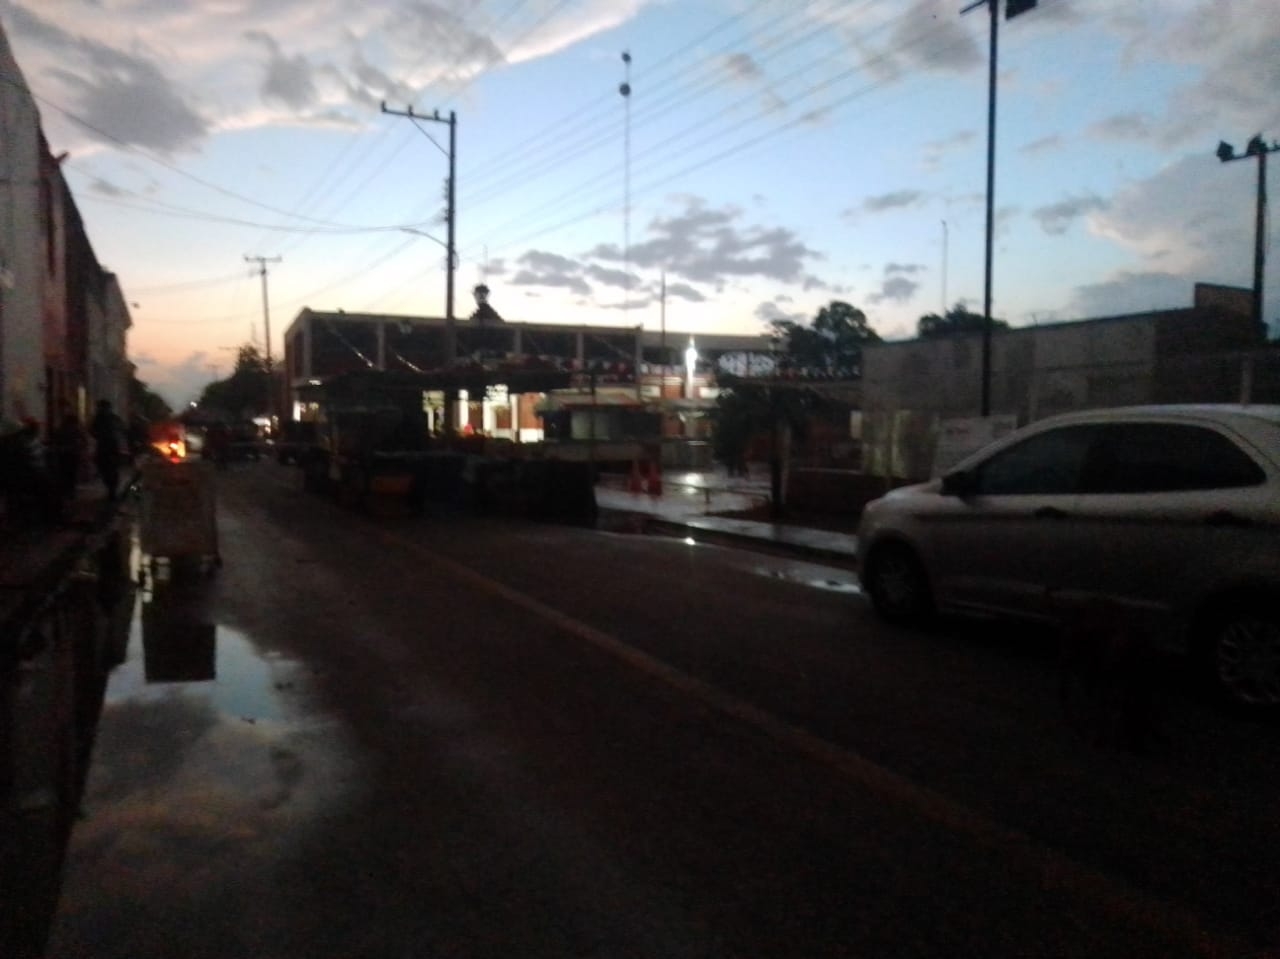 Fuerte aguacero inunda calles y deja sin luz a medio pueblo en Suma de Hidalgo